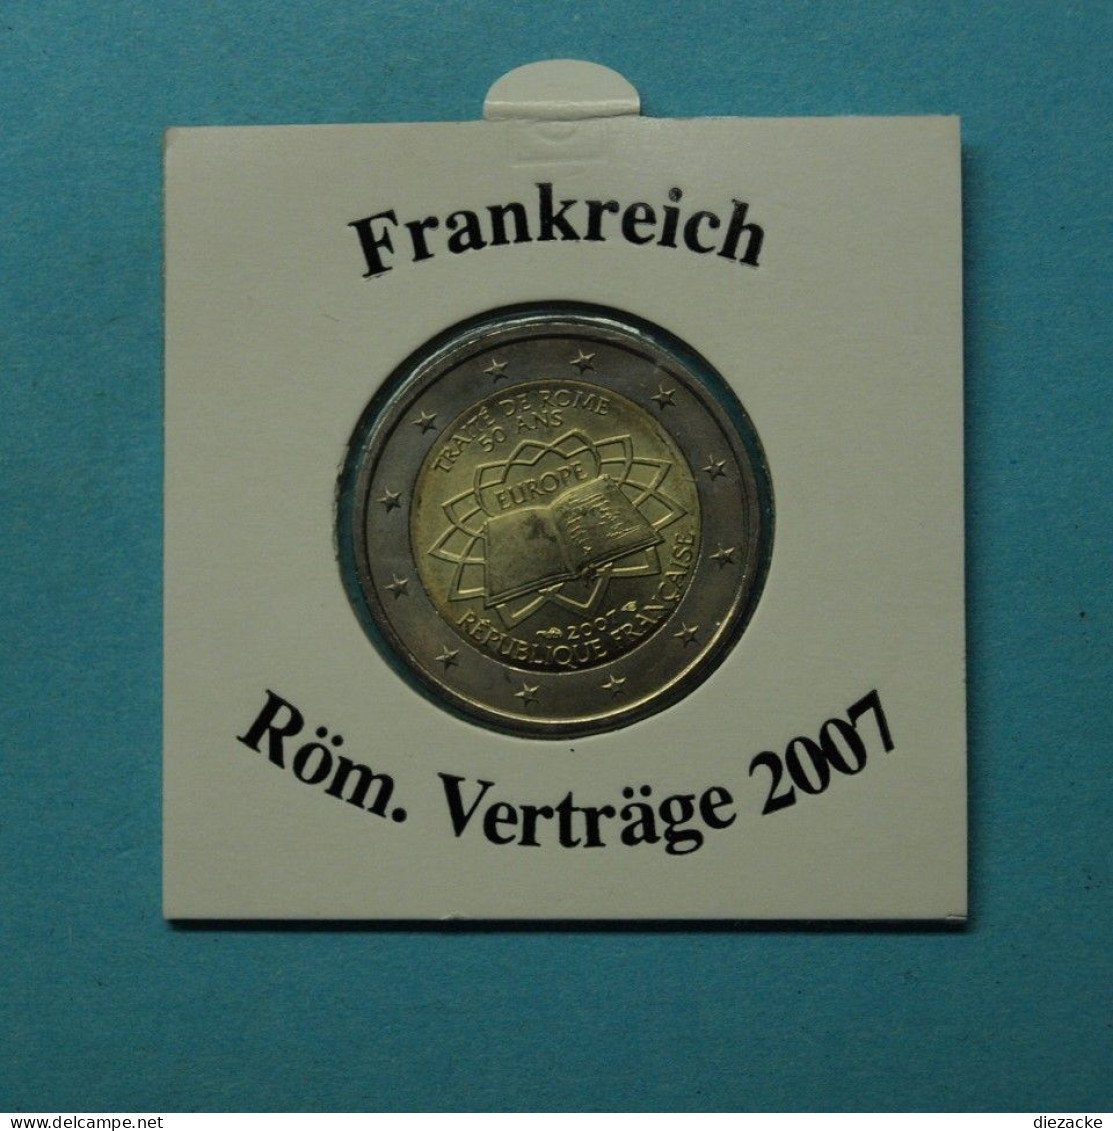 Frankreich 2007 2 Euro Römische Verträge ST (M5346 - Herdenking